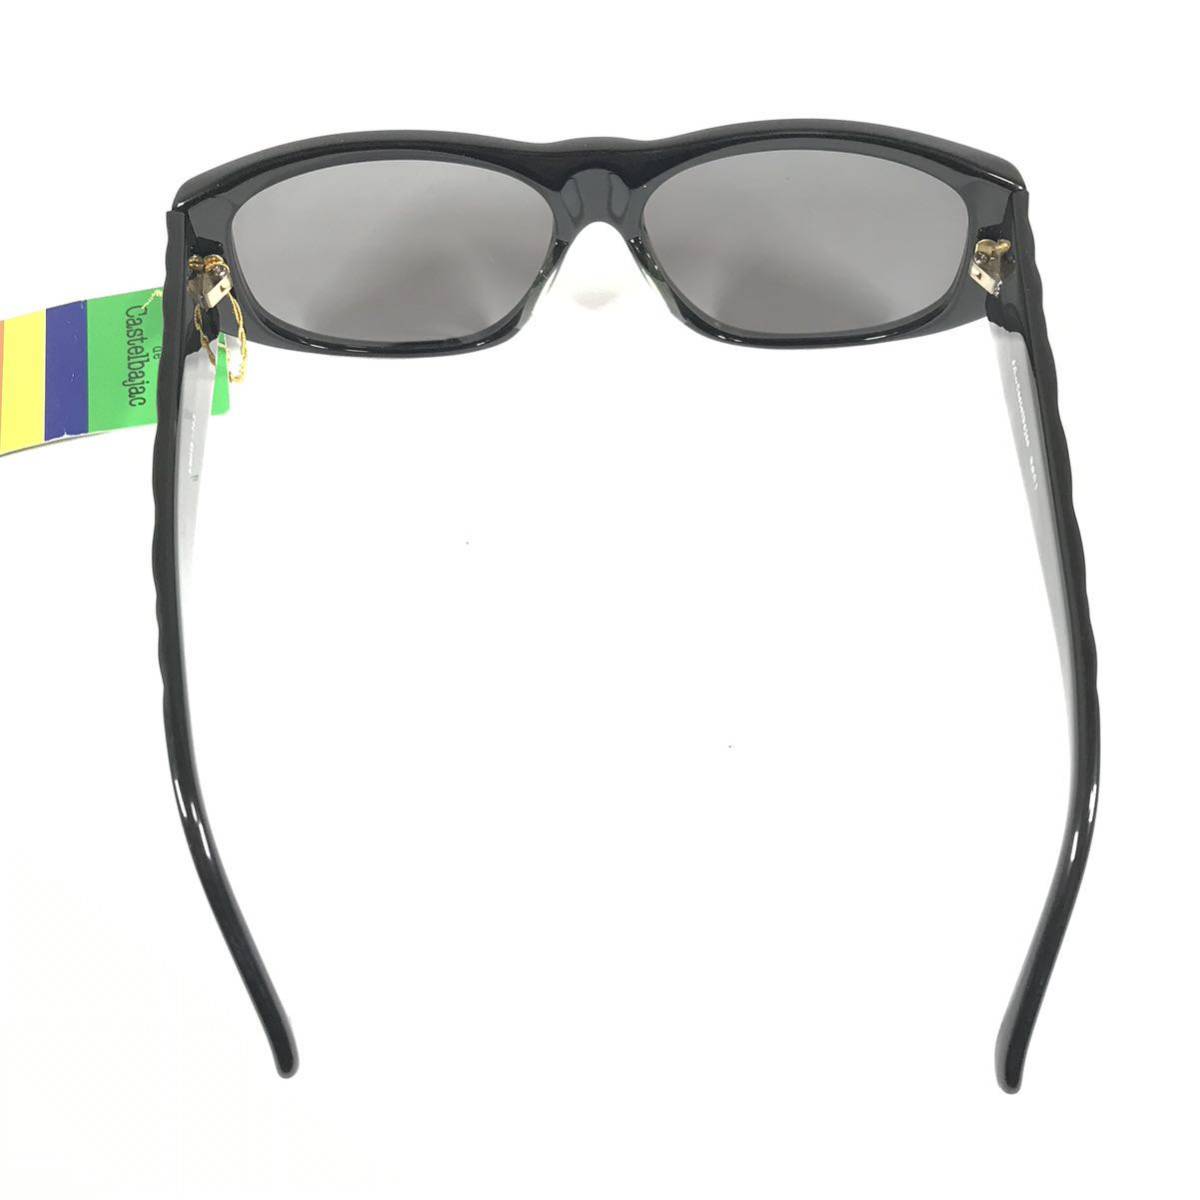  не использовался товар [ Castelbajac ] подлинный товар Castelbajac солнцезащитные очки JC Logo 9001 серый цвет серия × чёрный цвет серия мужской женский обычная цена 2.8 десять тысяч иен стоимость доставки 520 иен 2